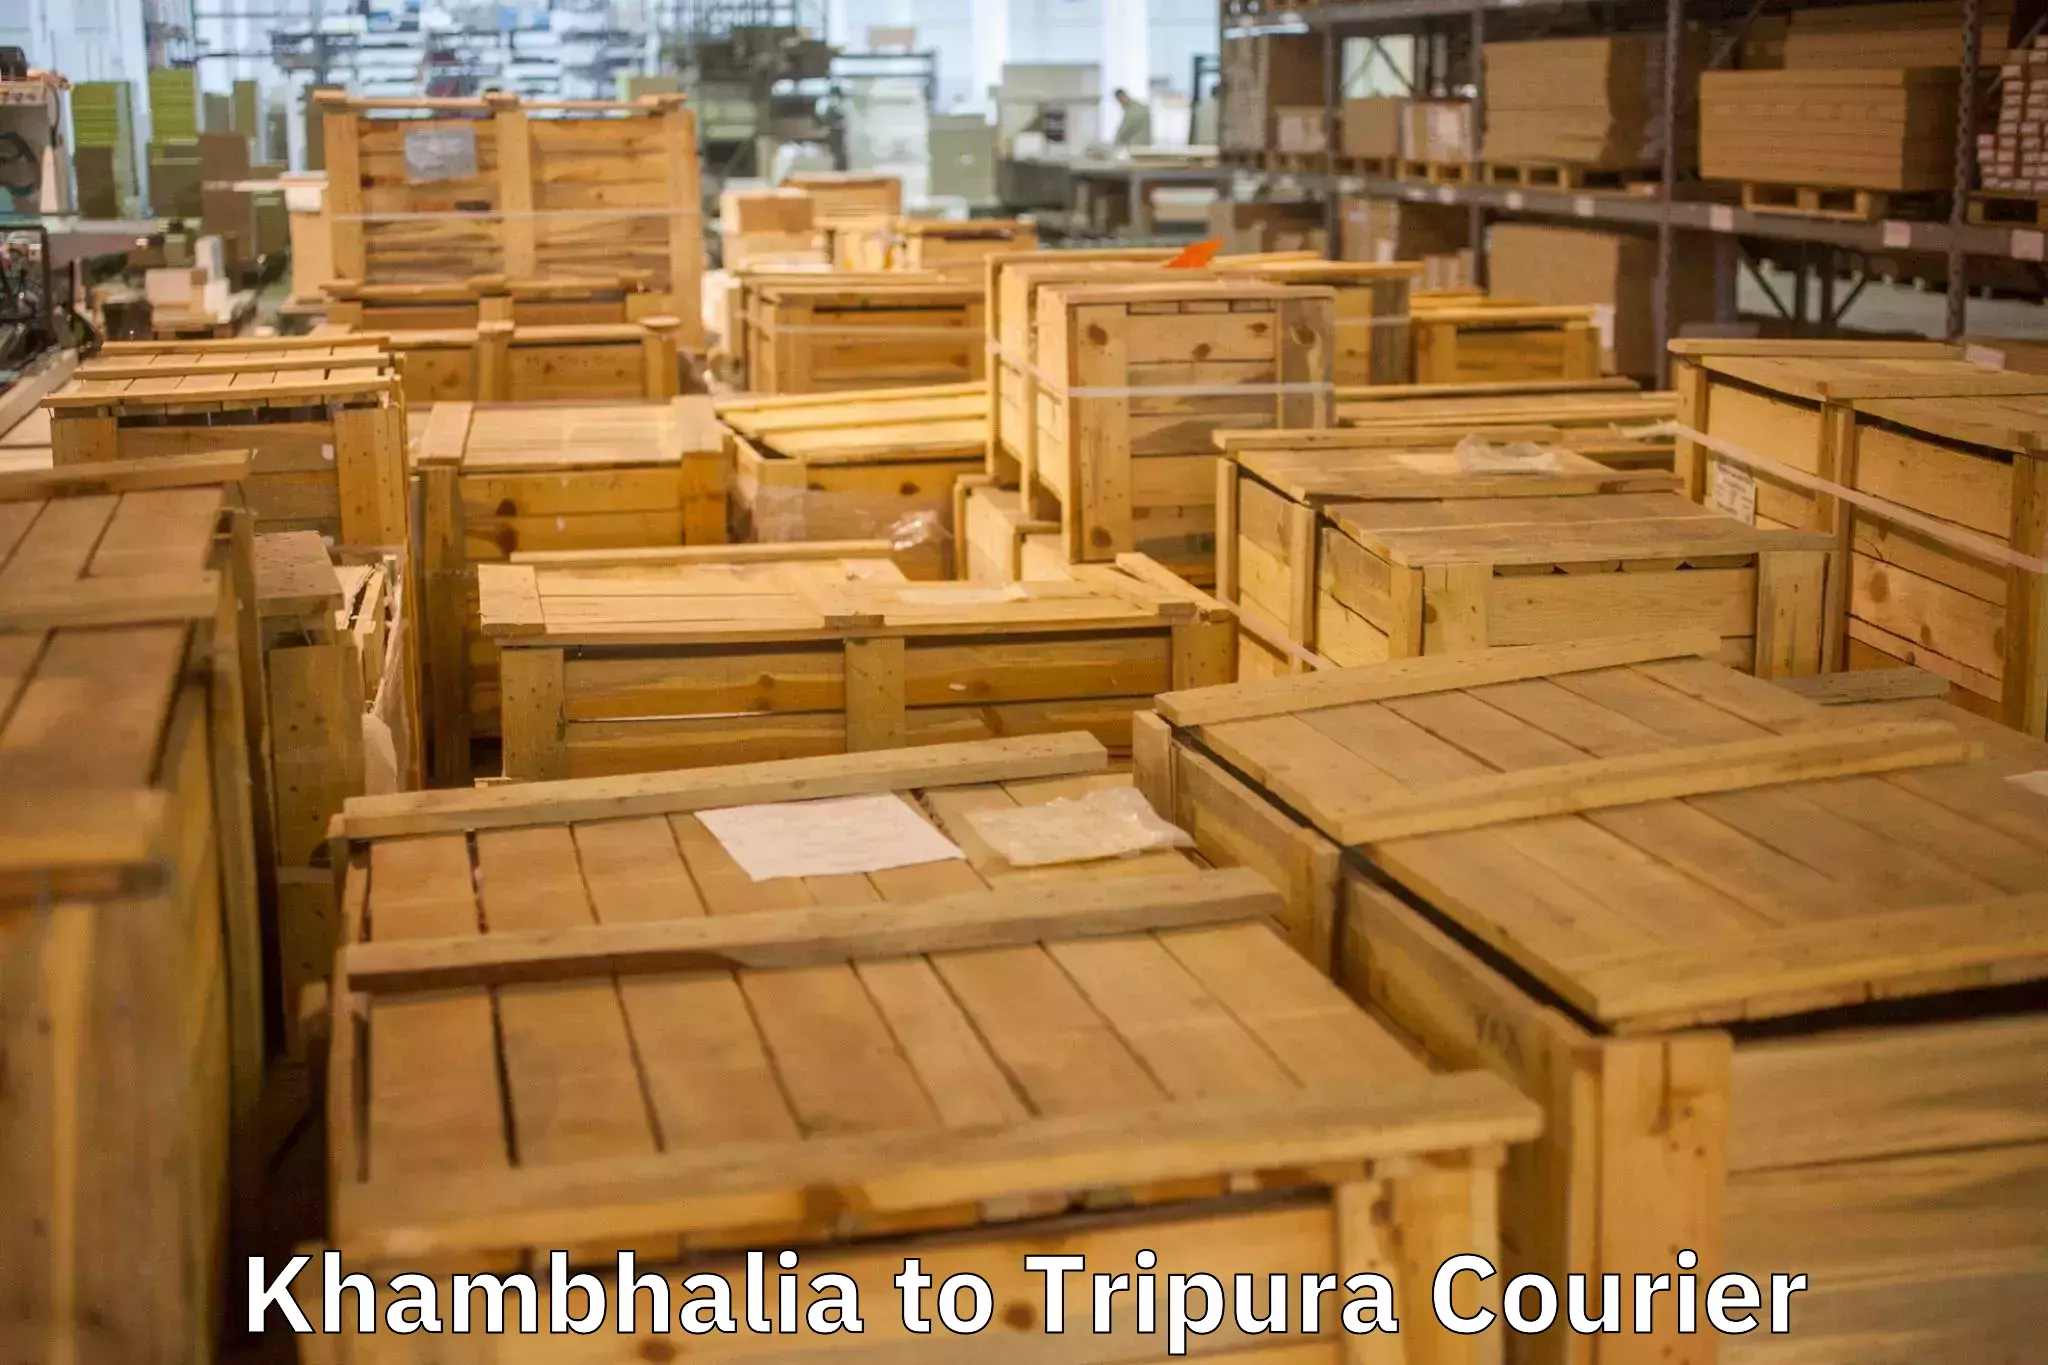 Professional home movers Khambhalia to Tripura